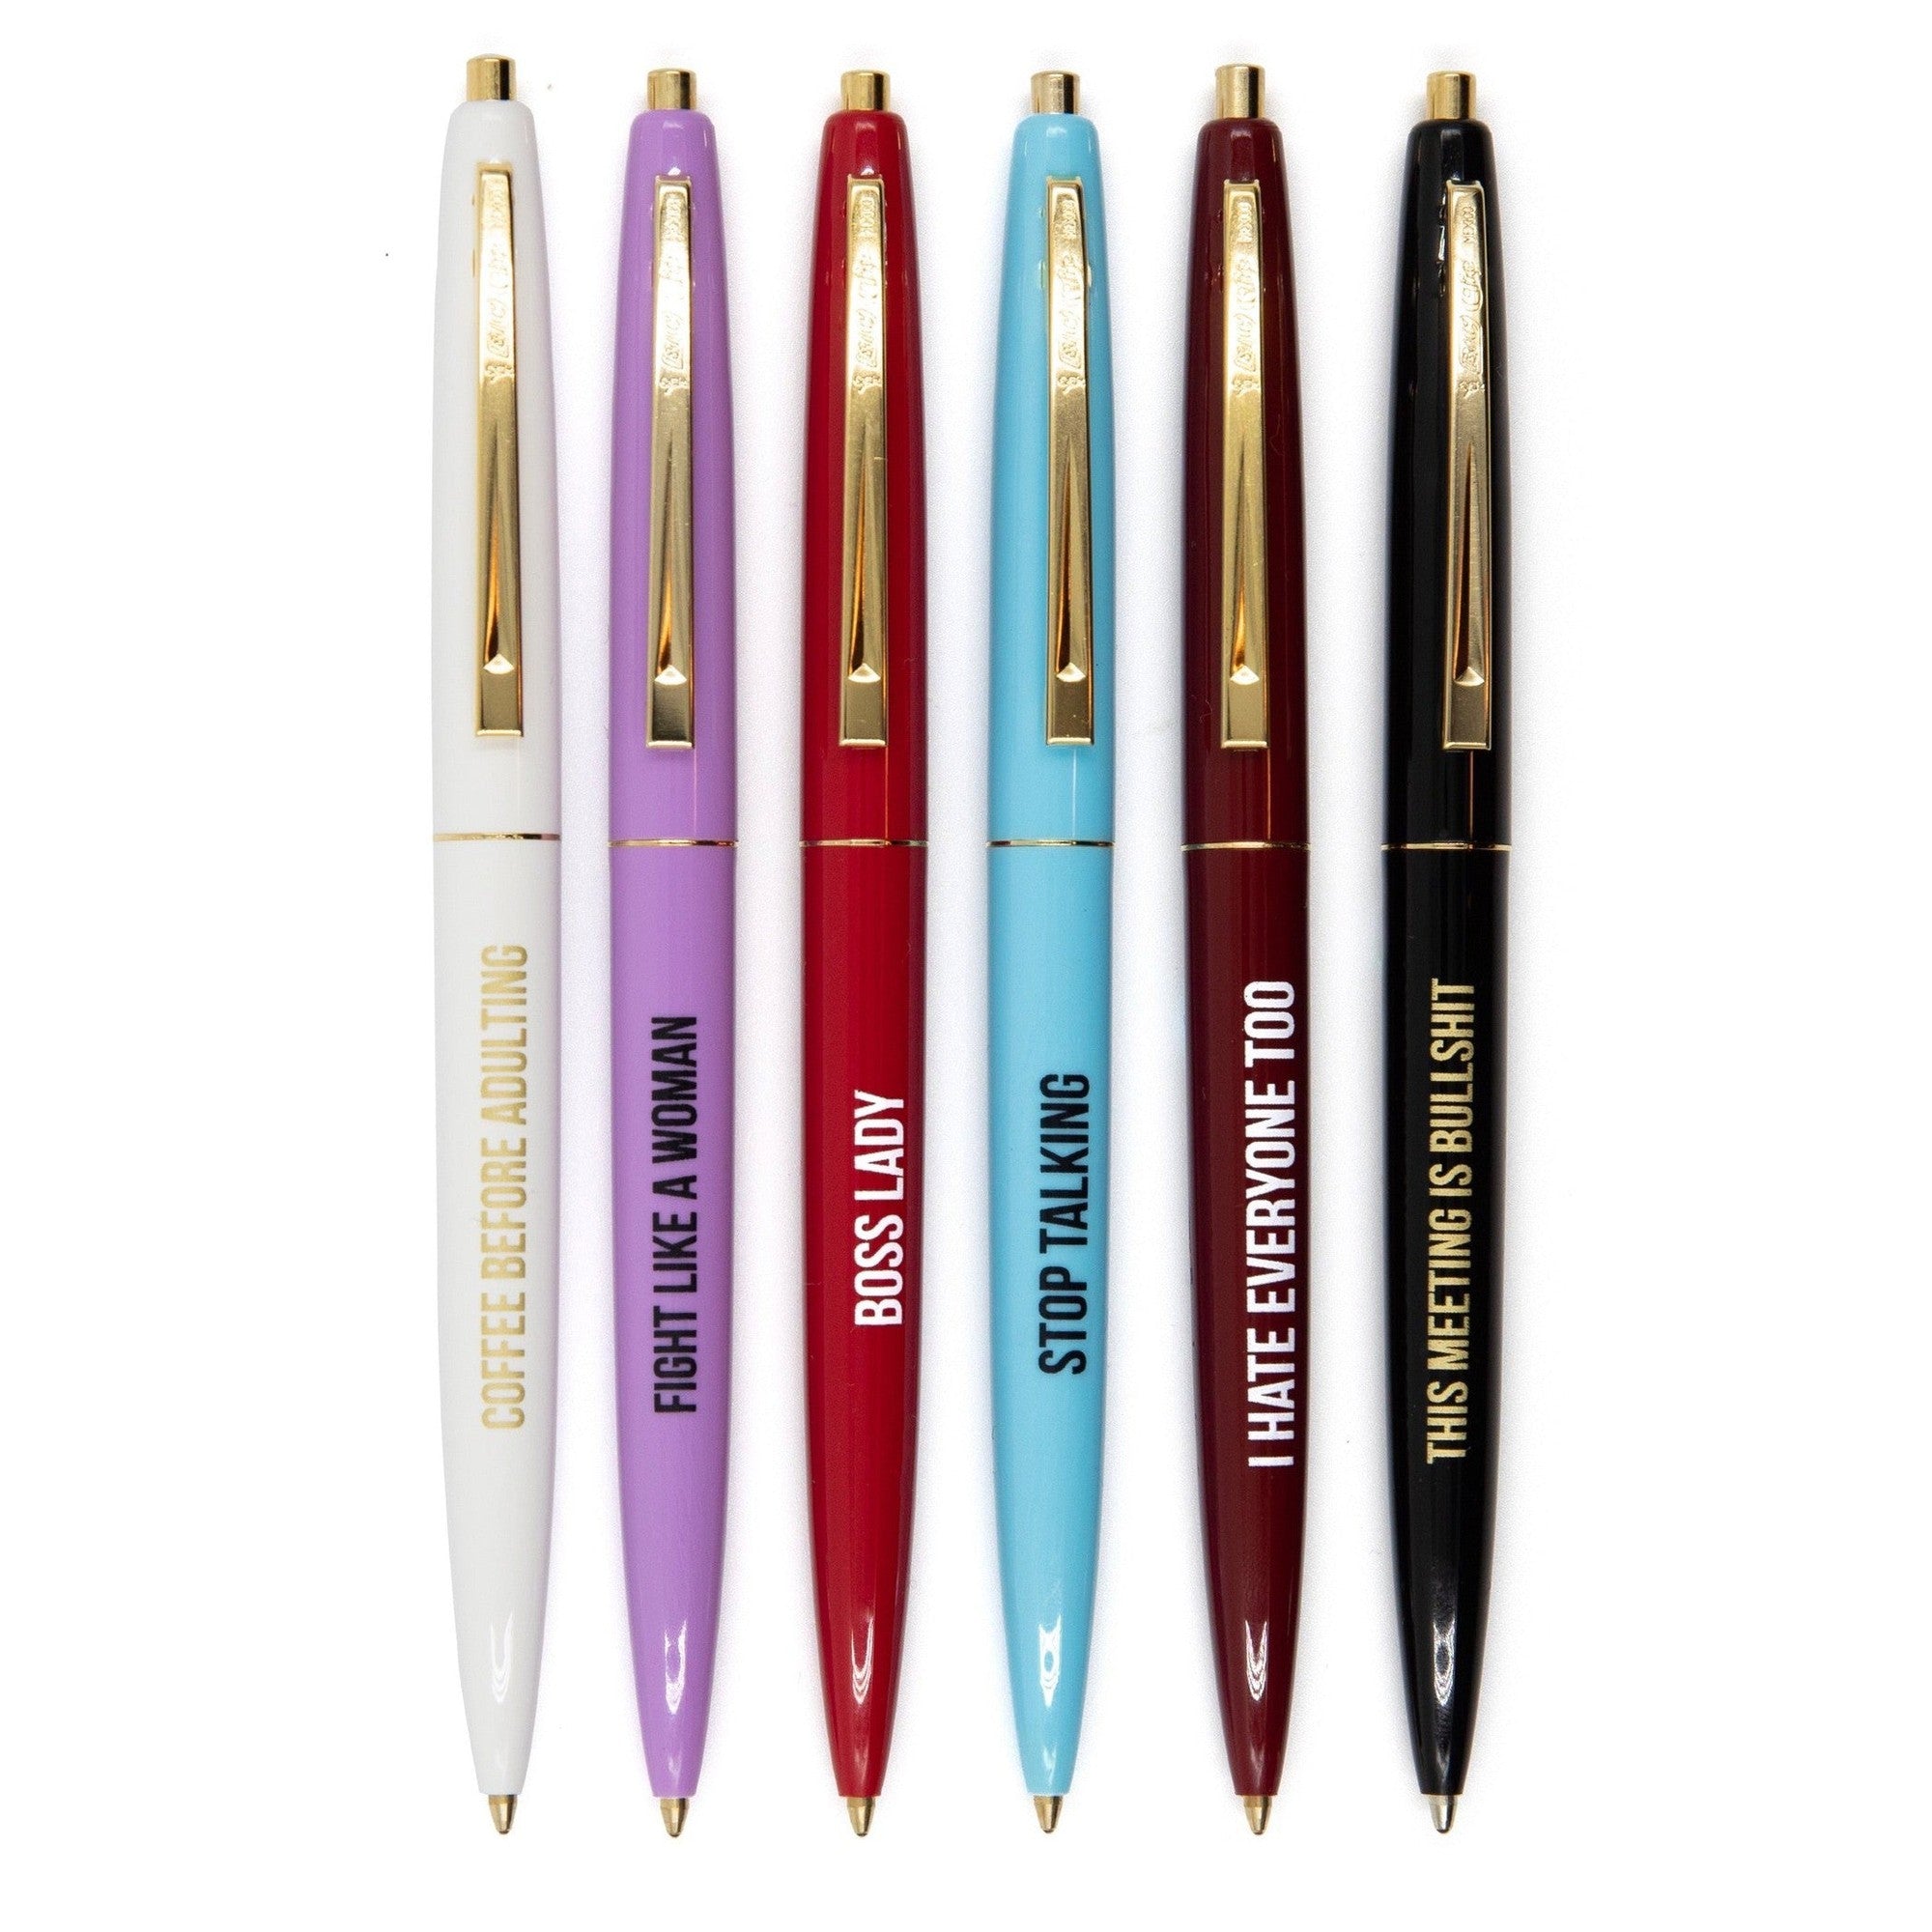 Fancy Pens for Women - Cute Pen for Women - Nice Pen Set - Office Boss Lady  Pen